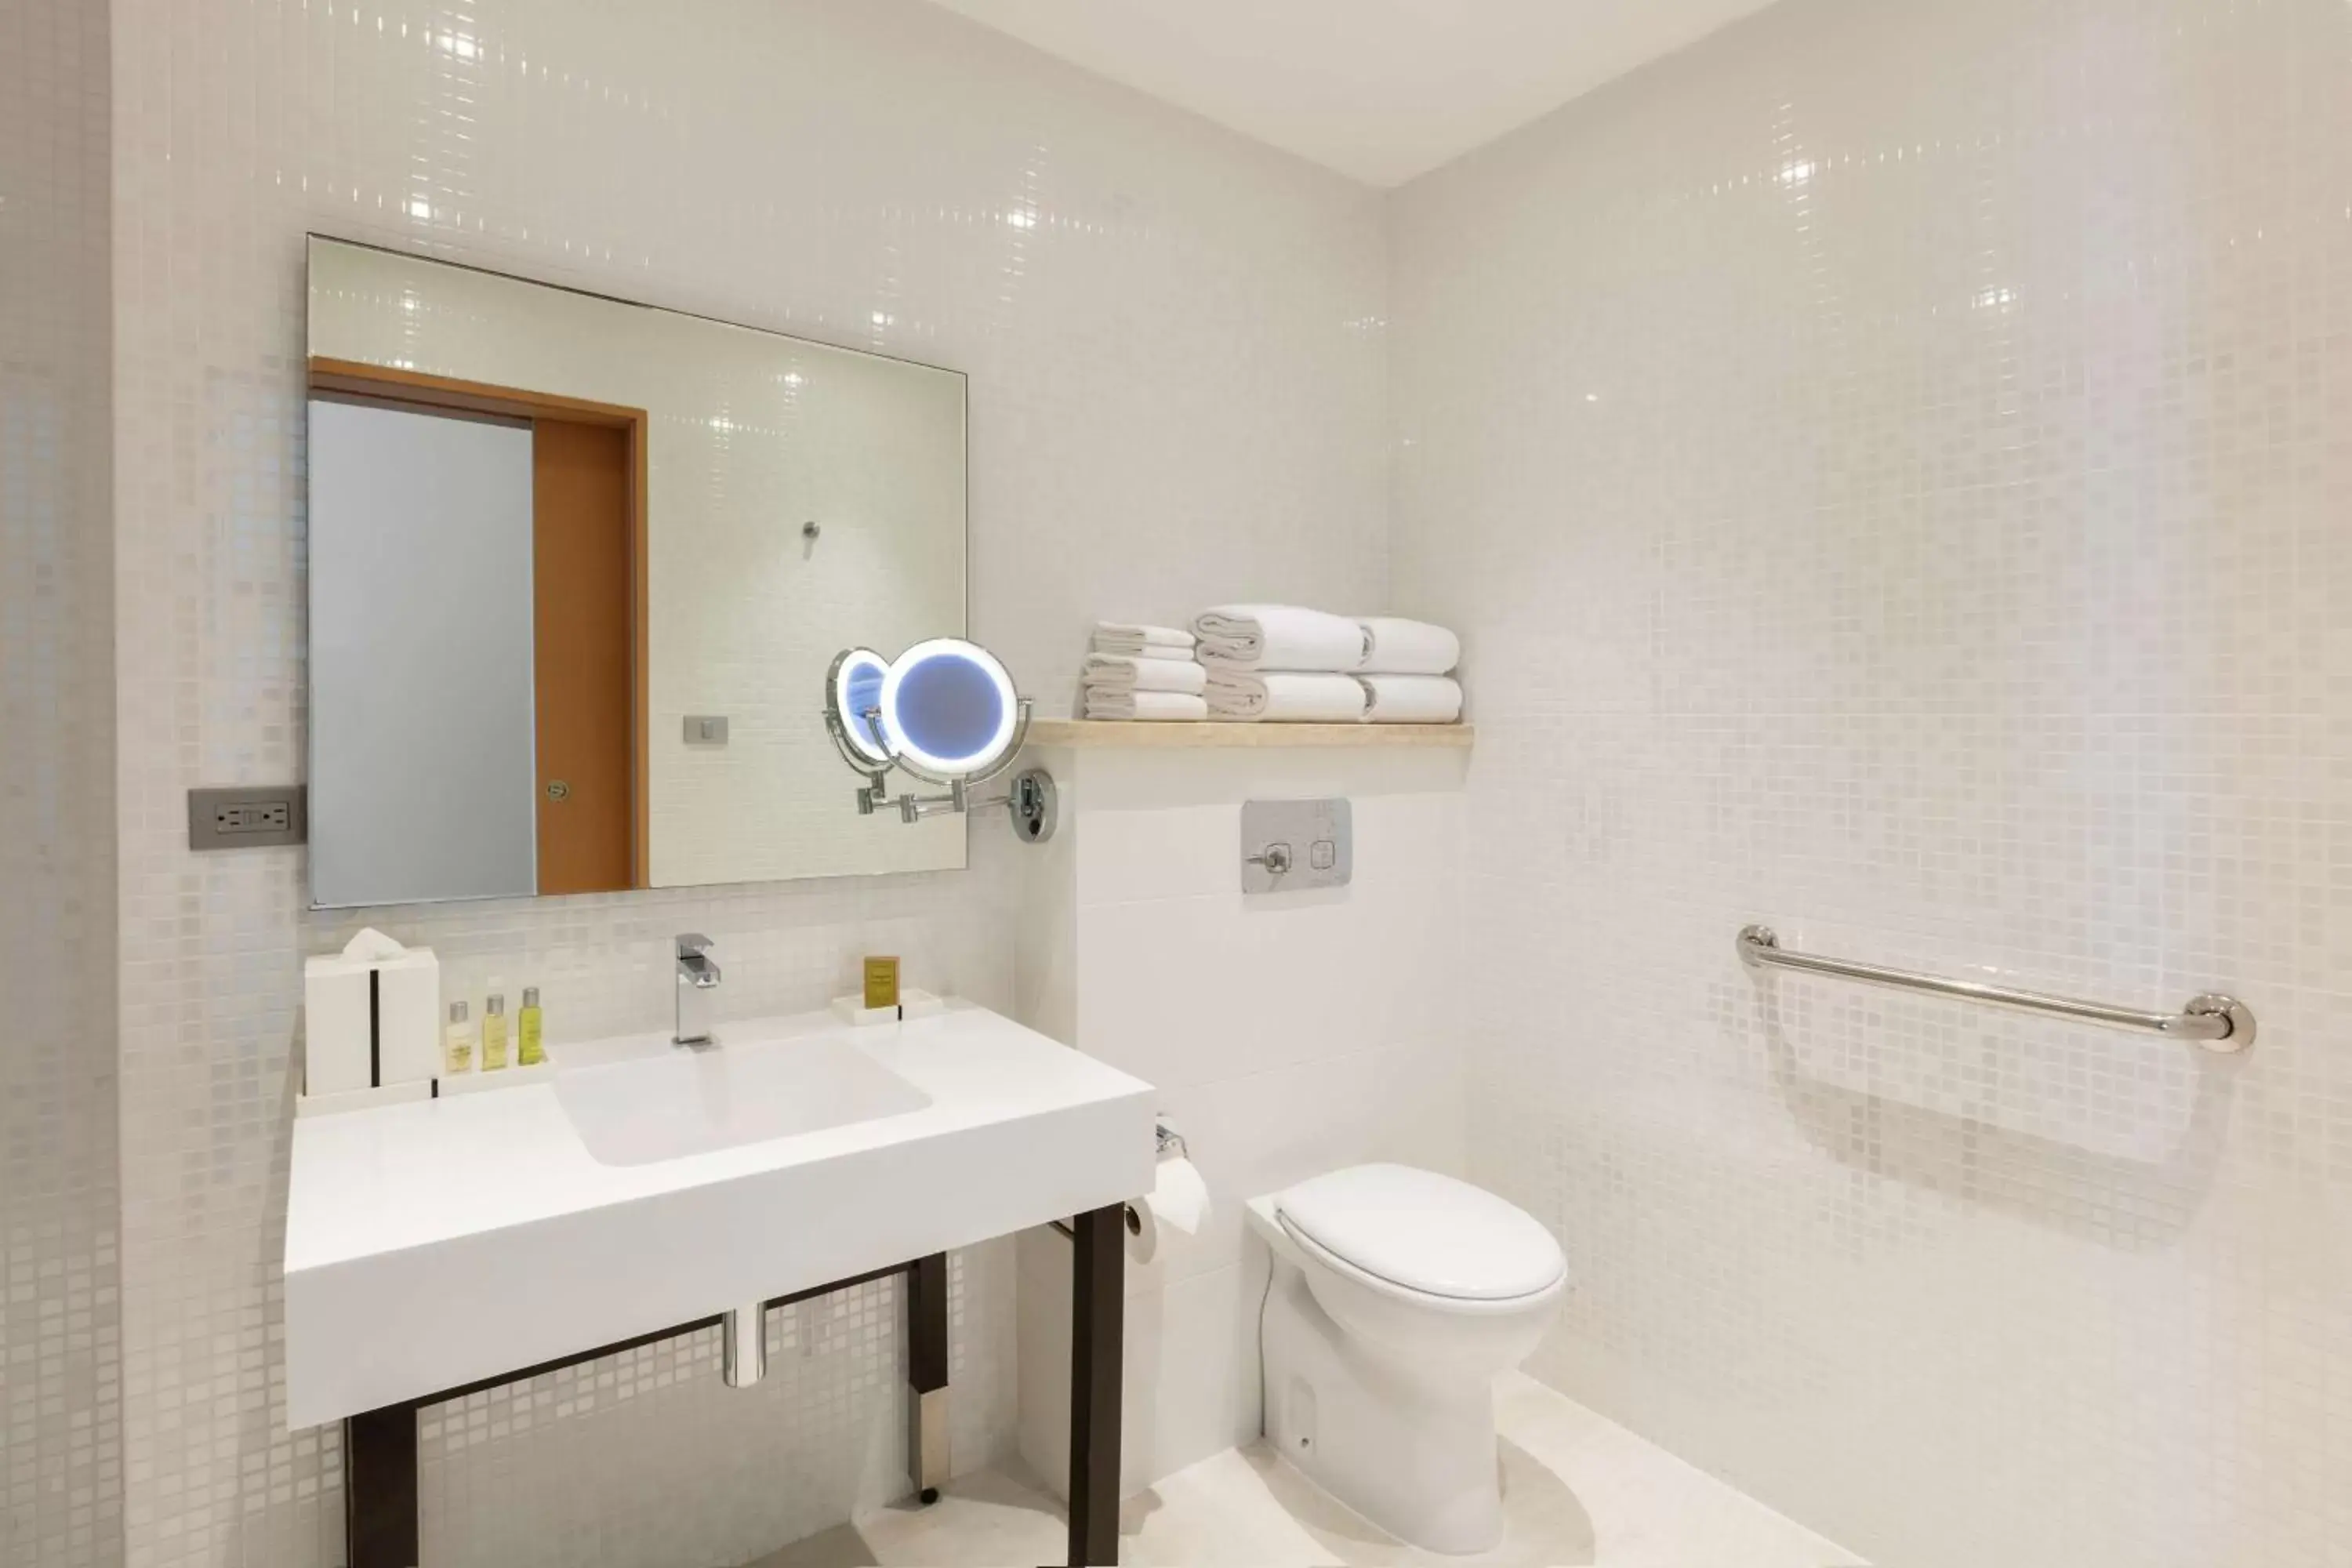 Bathroom in DoubleTree by Hilton Mazatlan, SIN